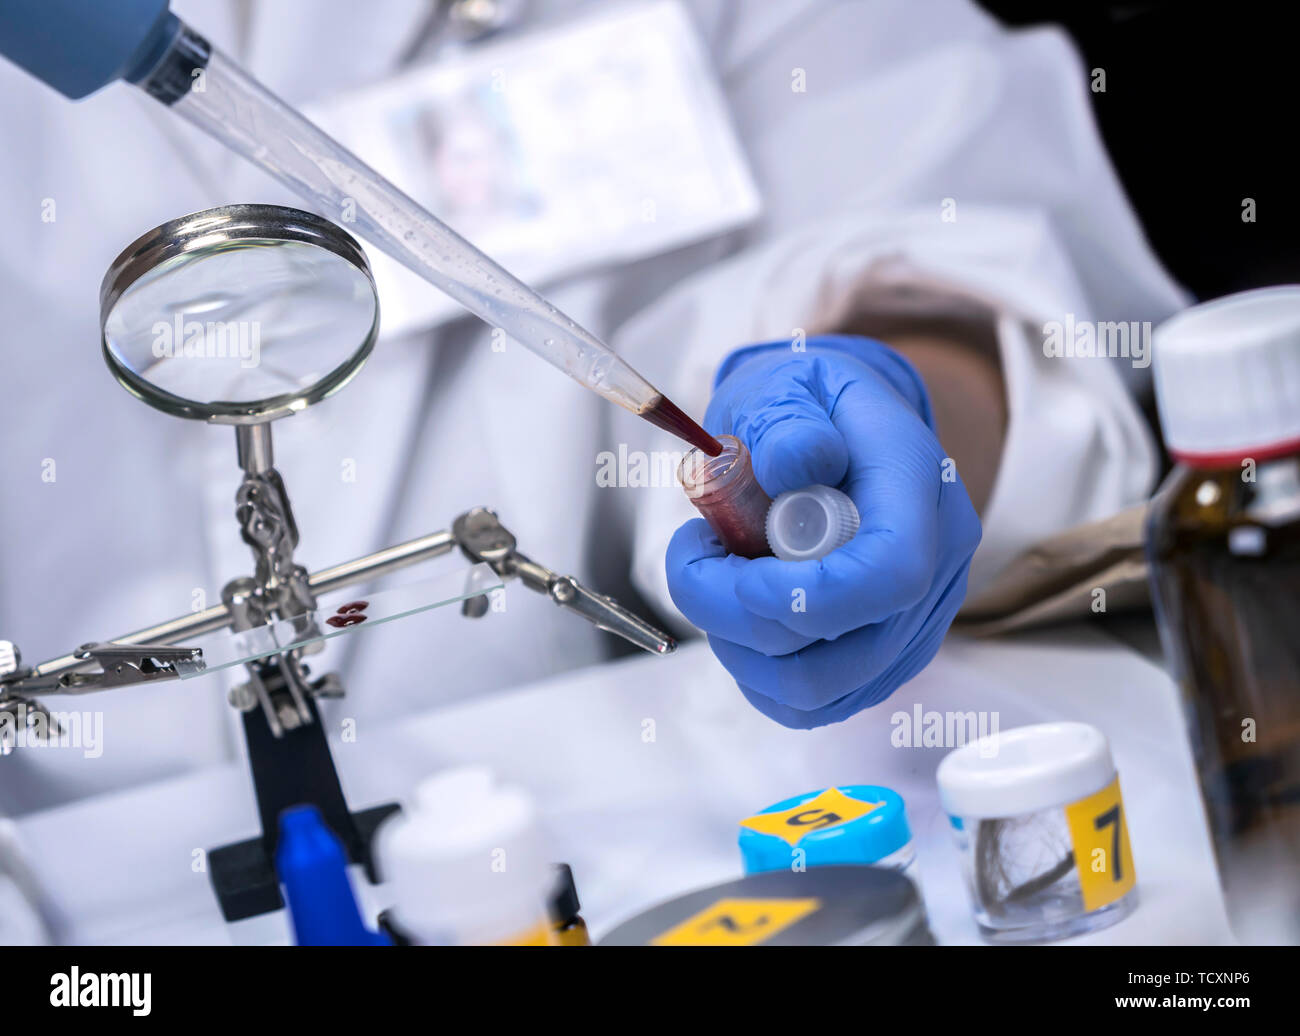 La policía científica extrae sangre de la escena del crimen en el laboratorio forense para verificar el ADN, imagen conceptual Foto de stock